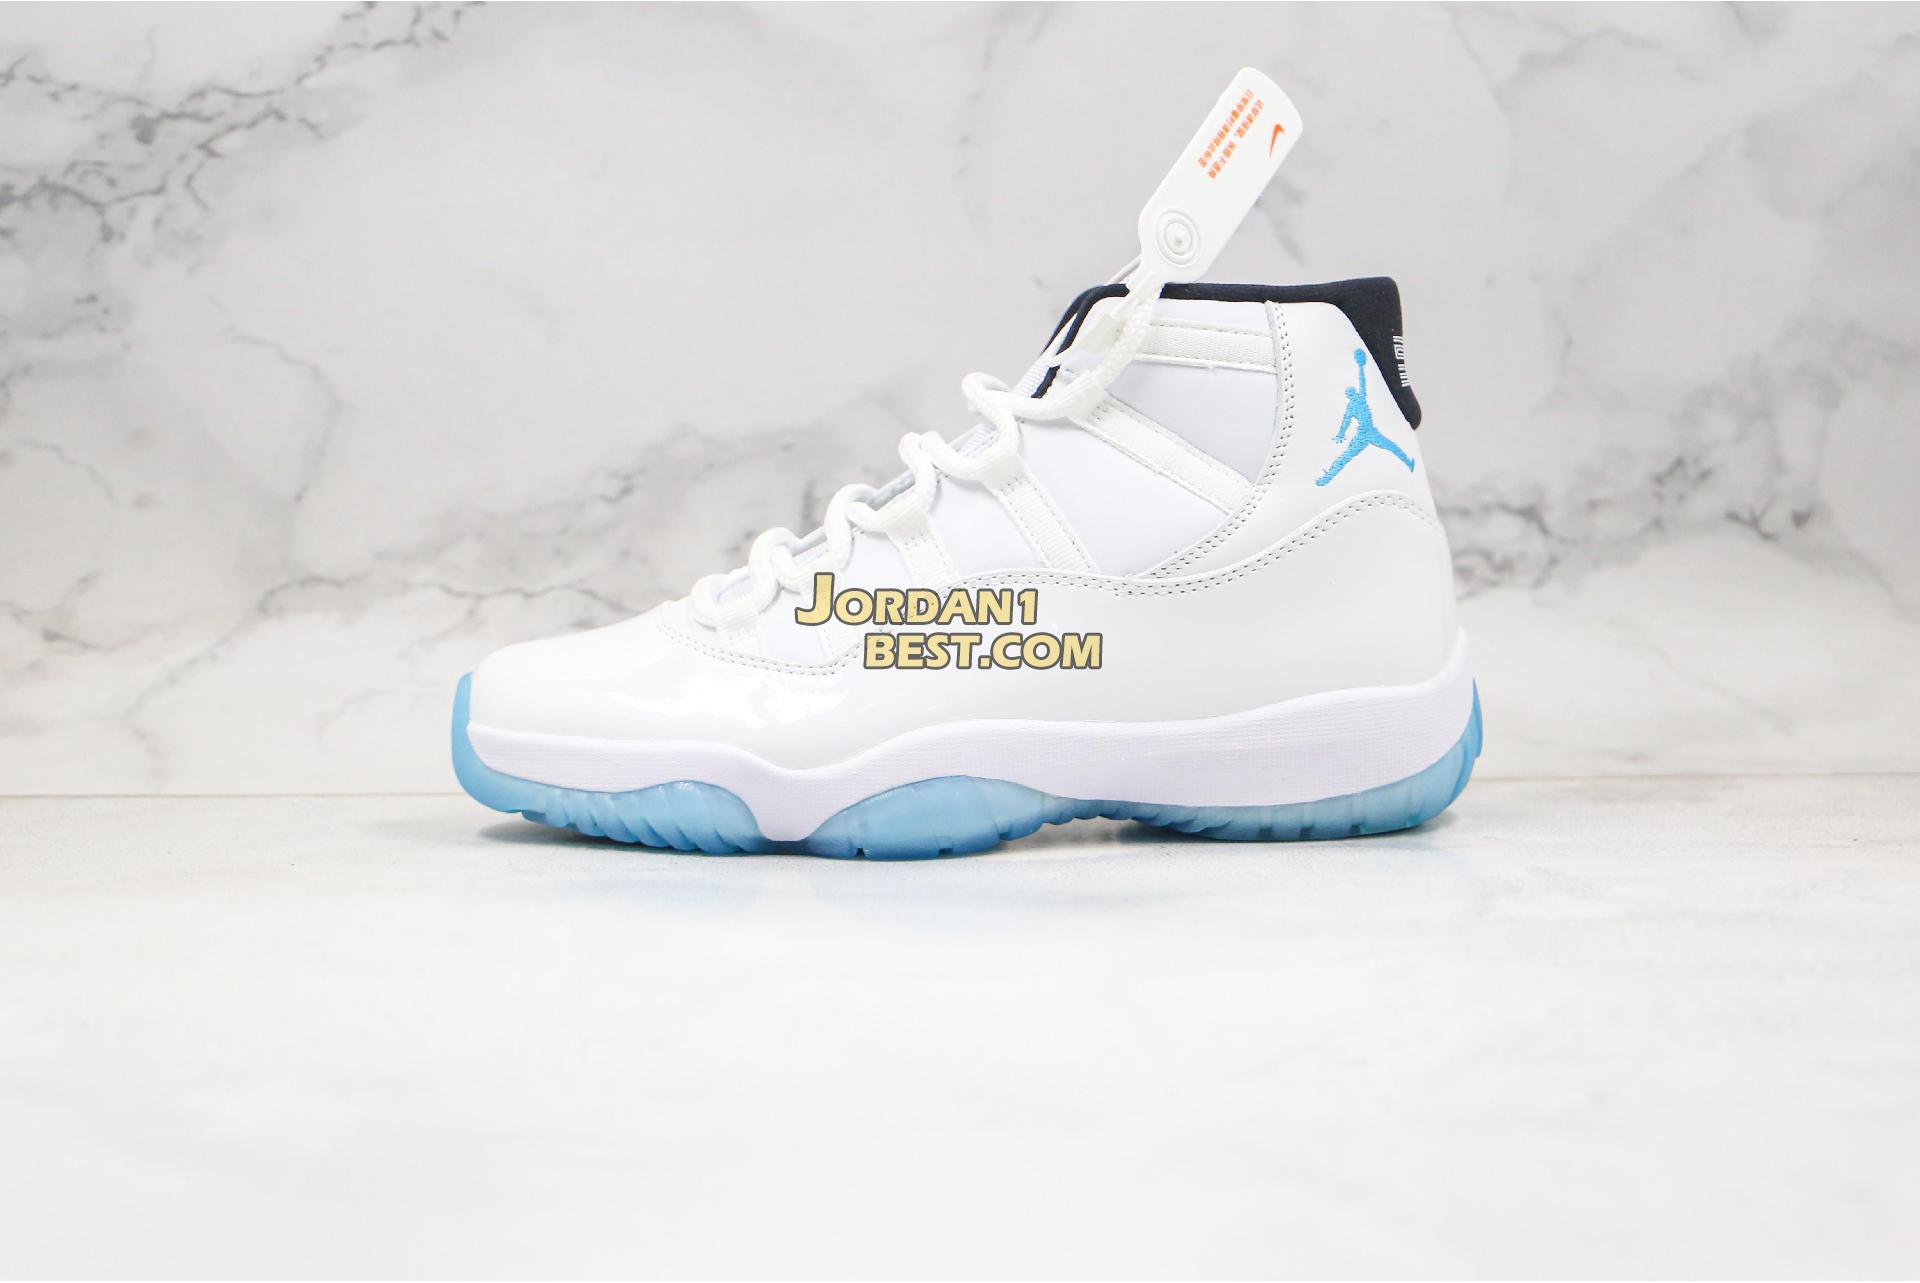 AAA Quality Air Jordan 11 Retro "Legend Blue" 378037-117 Mens white/legend blue Shoes